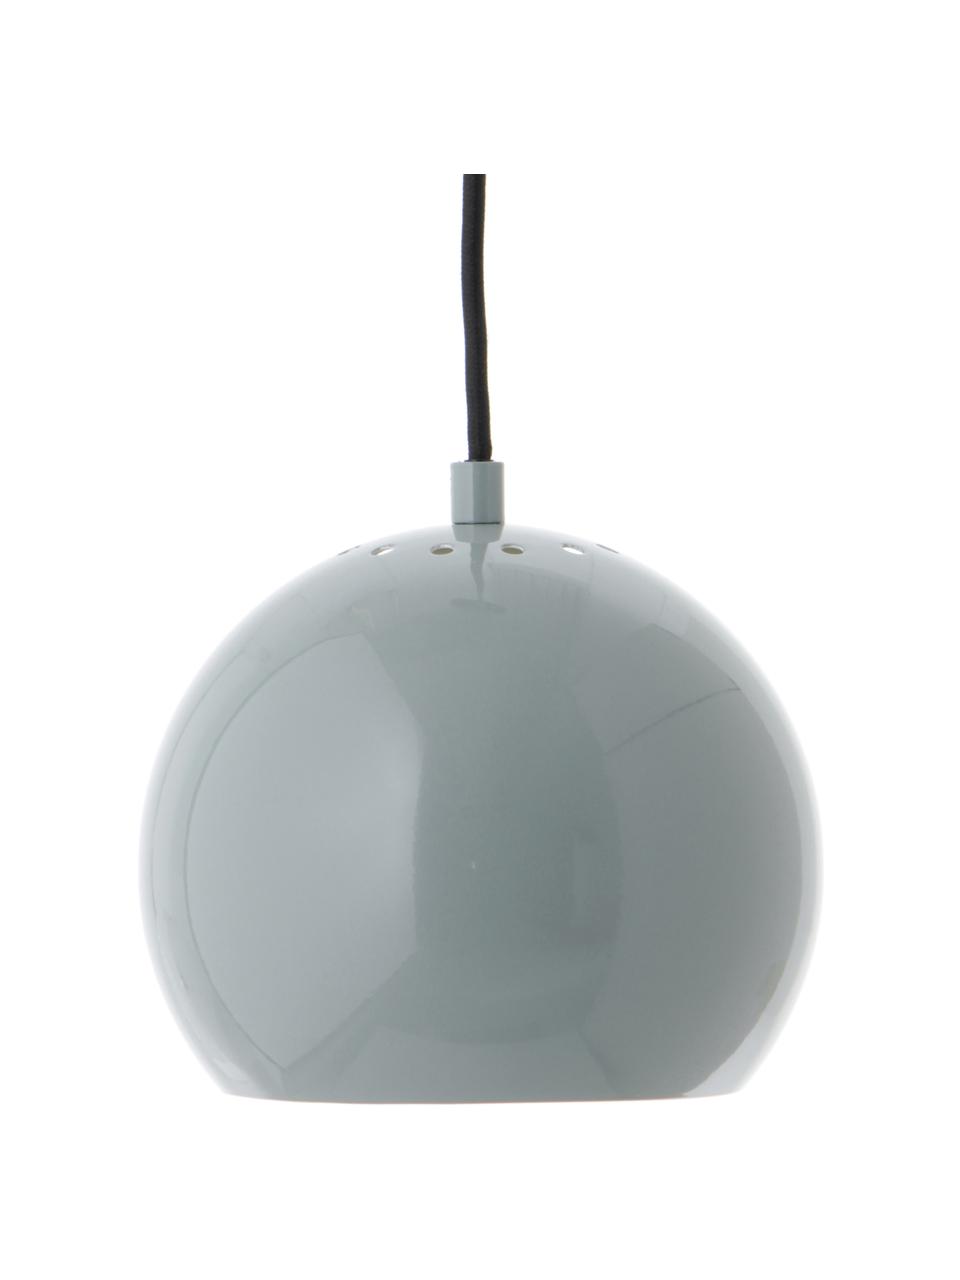 Petite suspension boule Ball, Bleu-gris, Ø 18 x haut. 16 cm